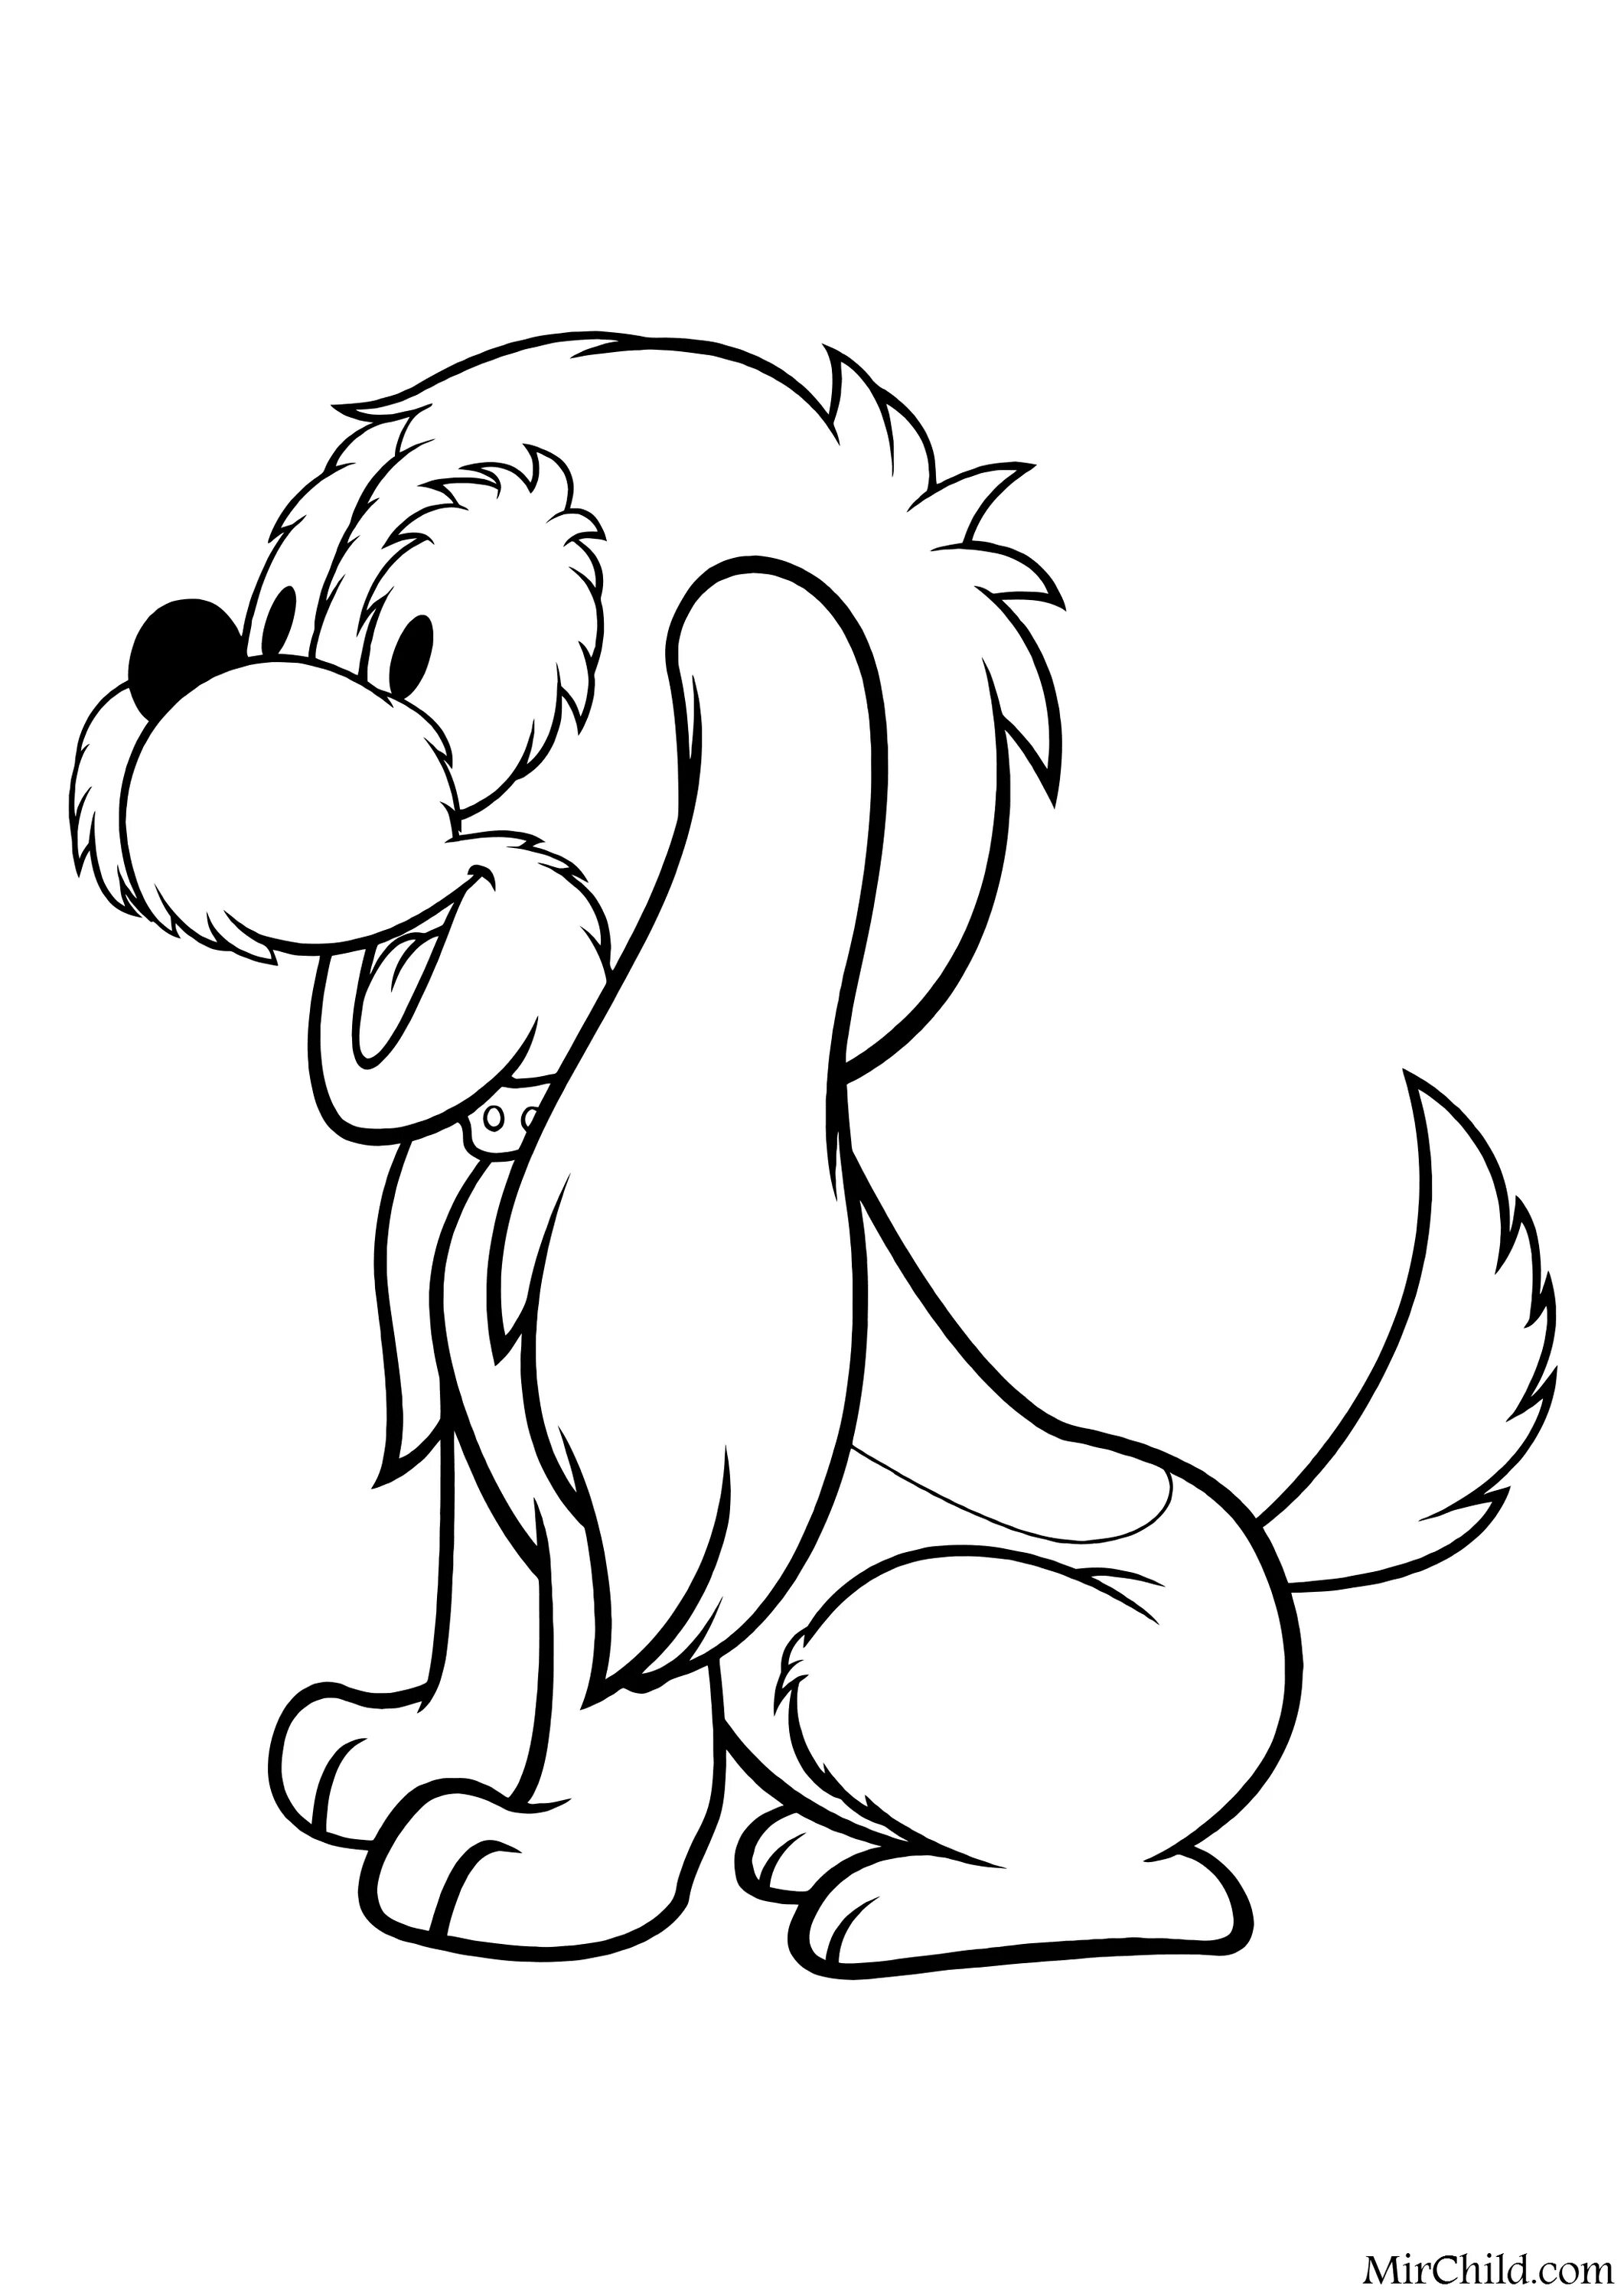 Cartoon dog #1